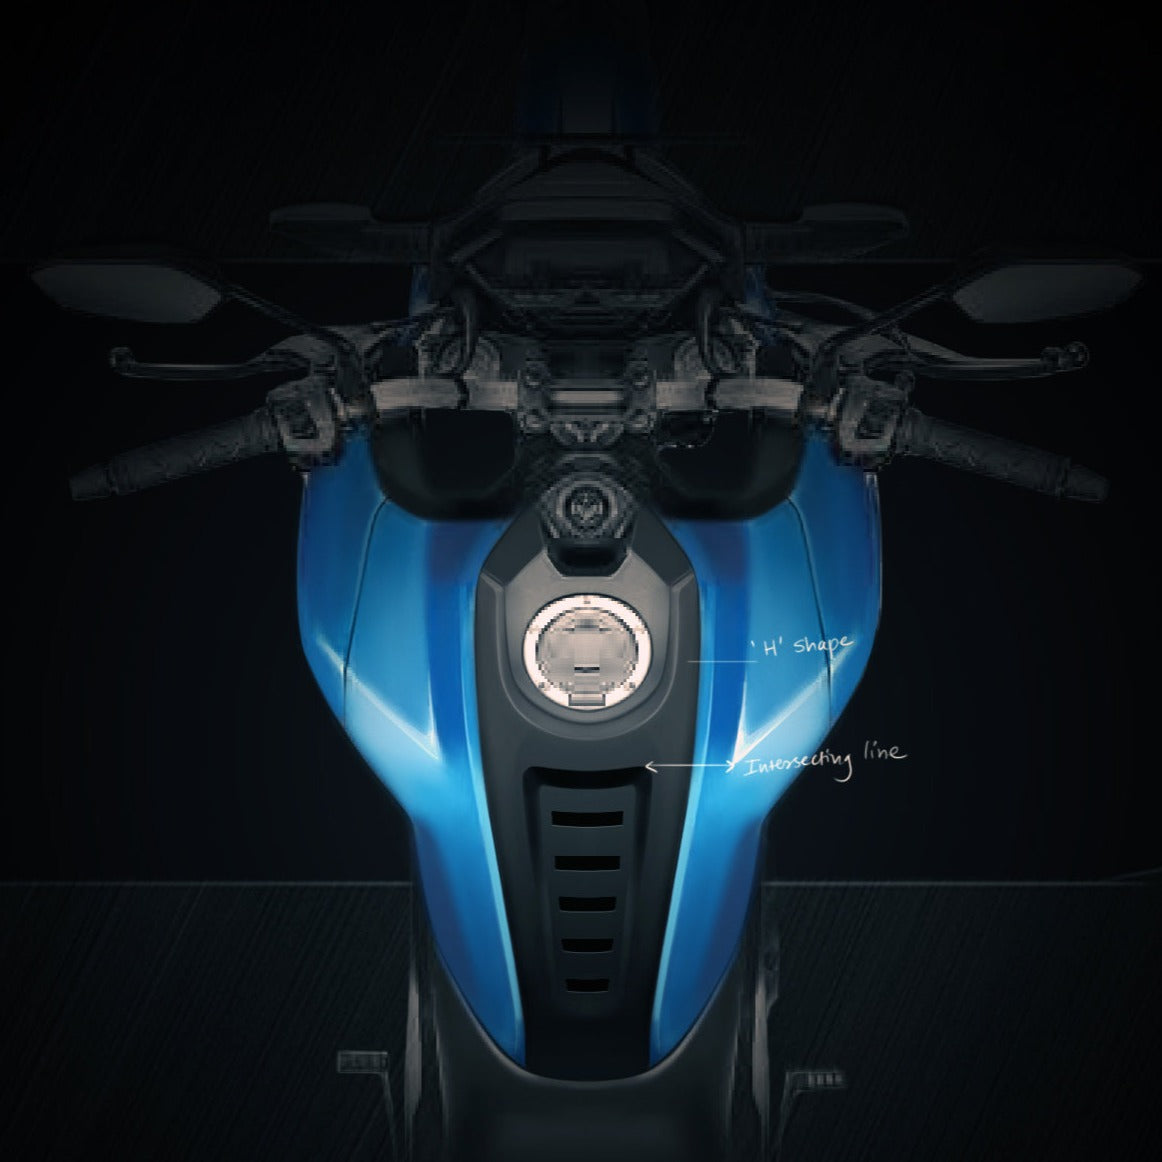 TankTie for Honda Hornet 2.0 - Under Development